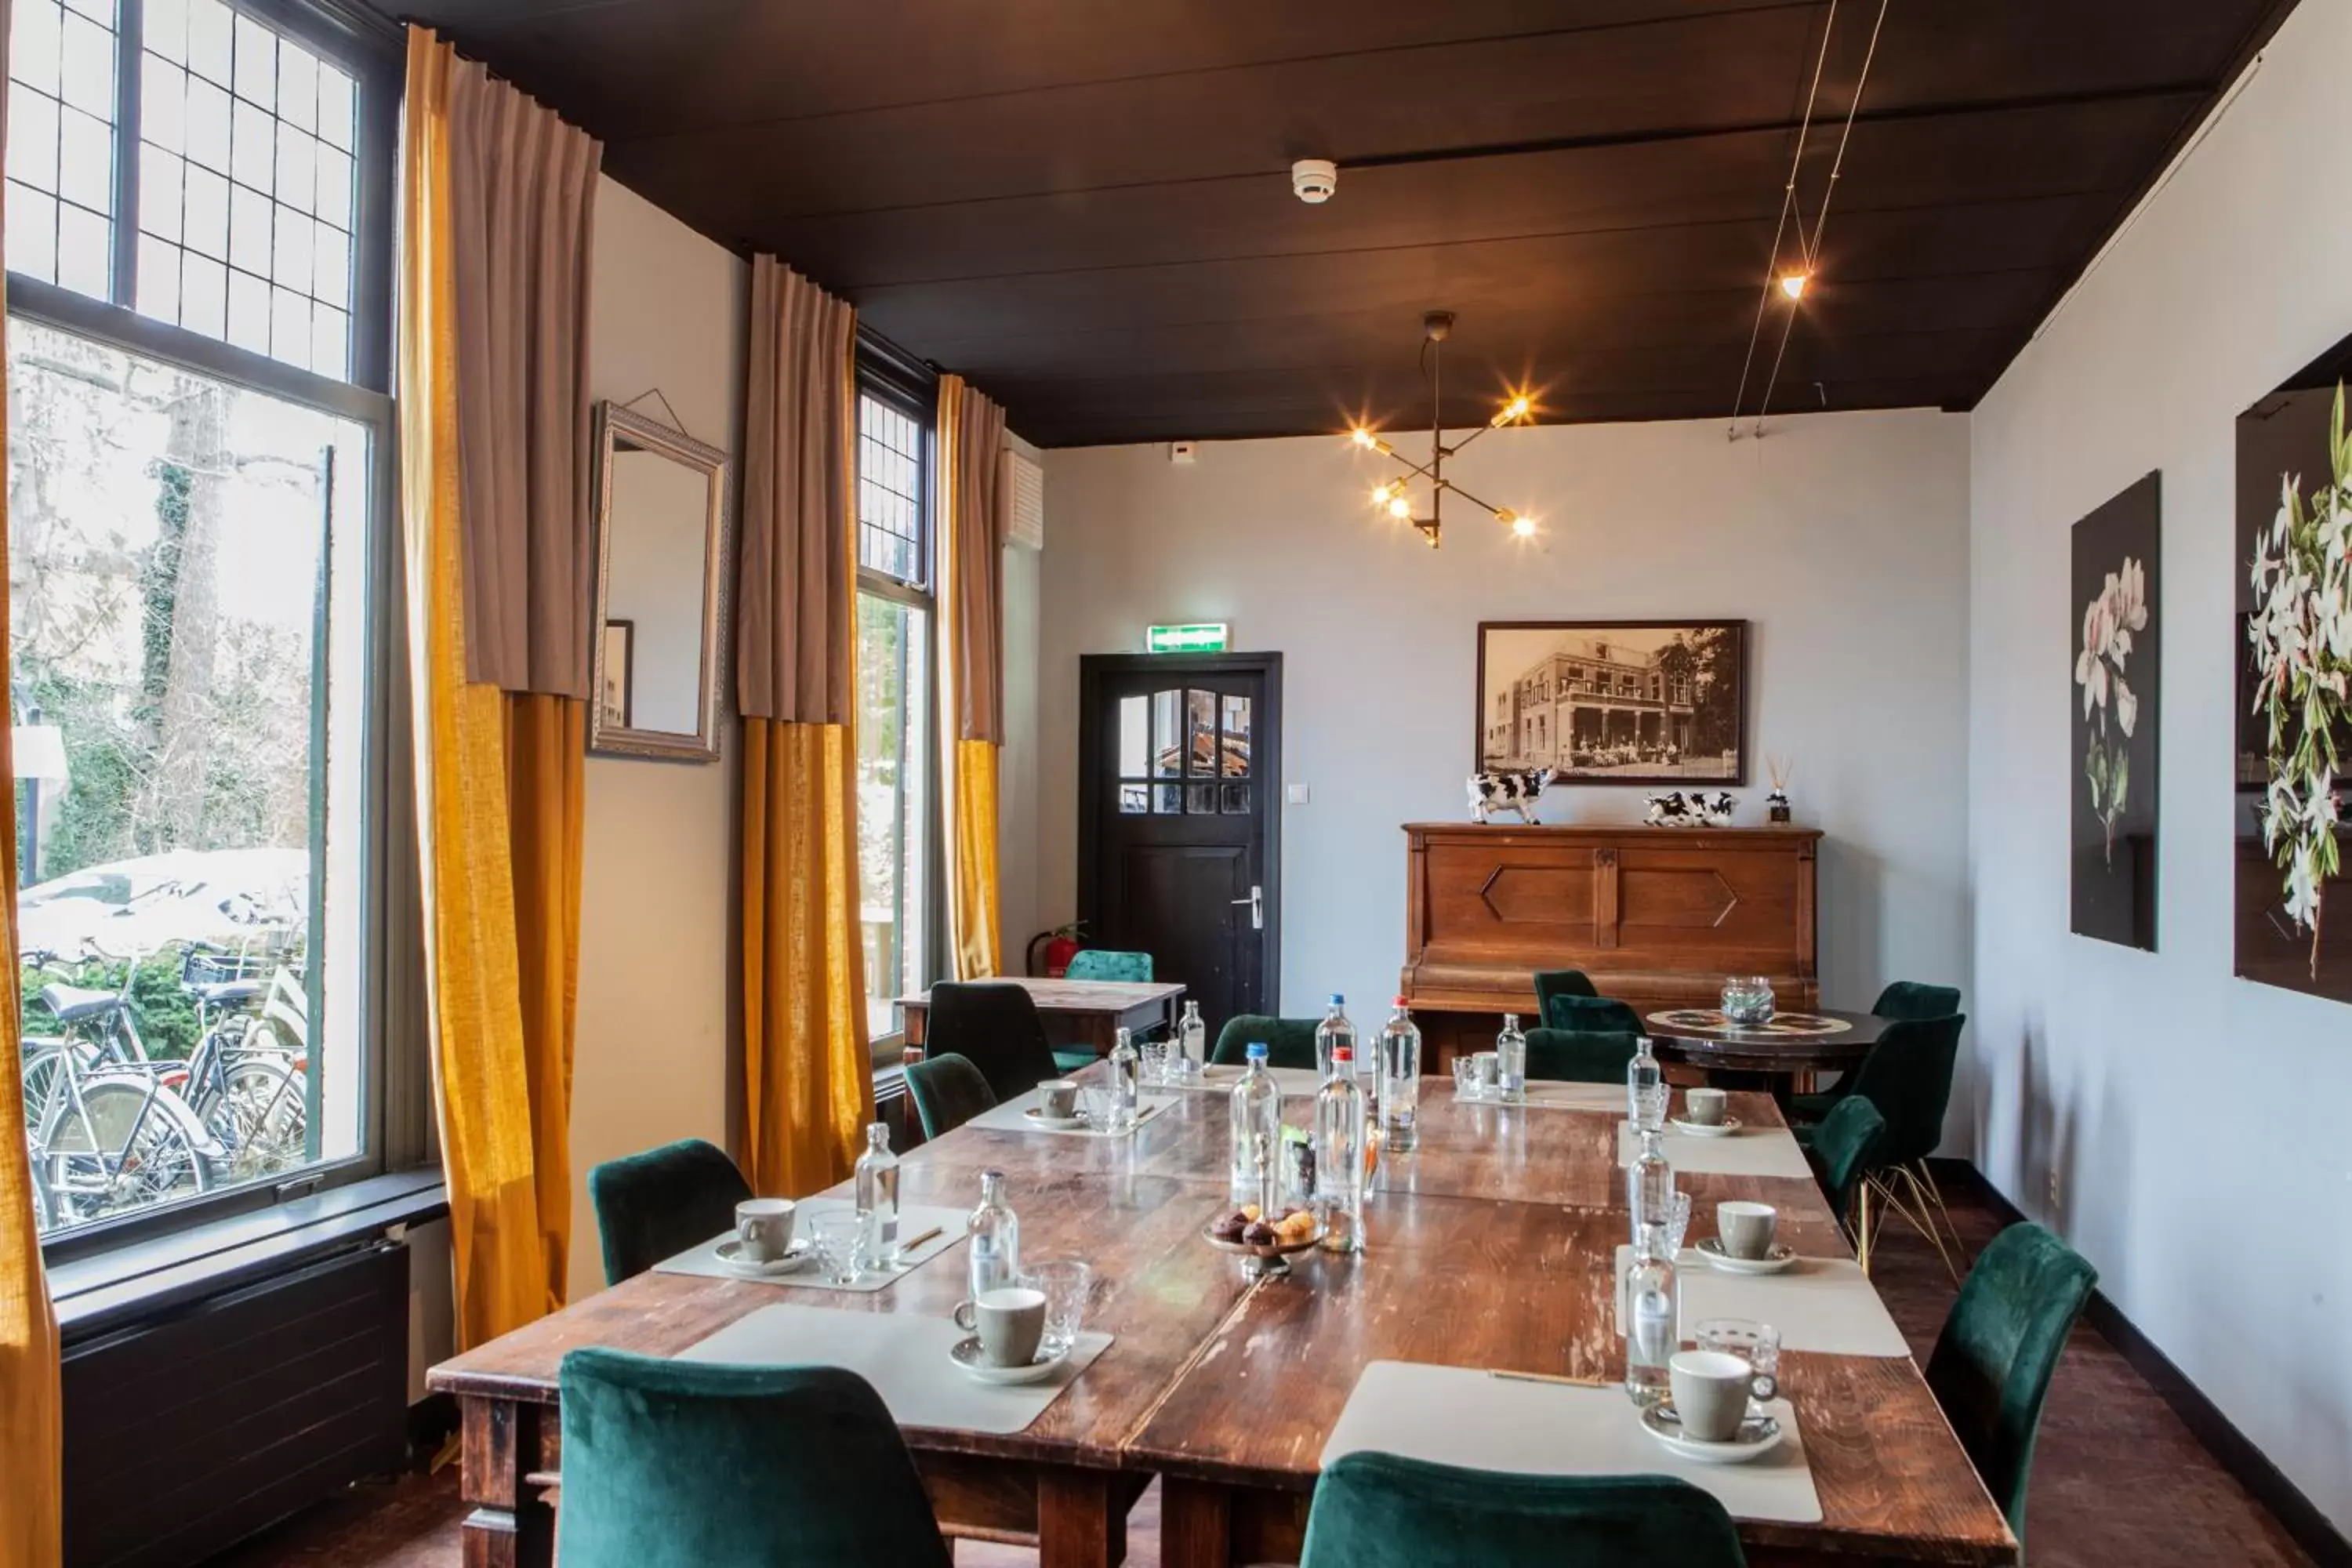 Meeting/conference room, Restaurant/Places to Eat in Hotel Heerlijkheid Bergen